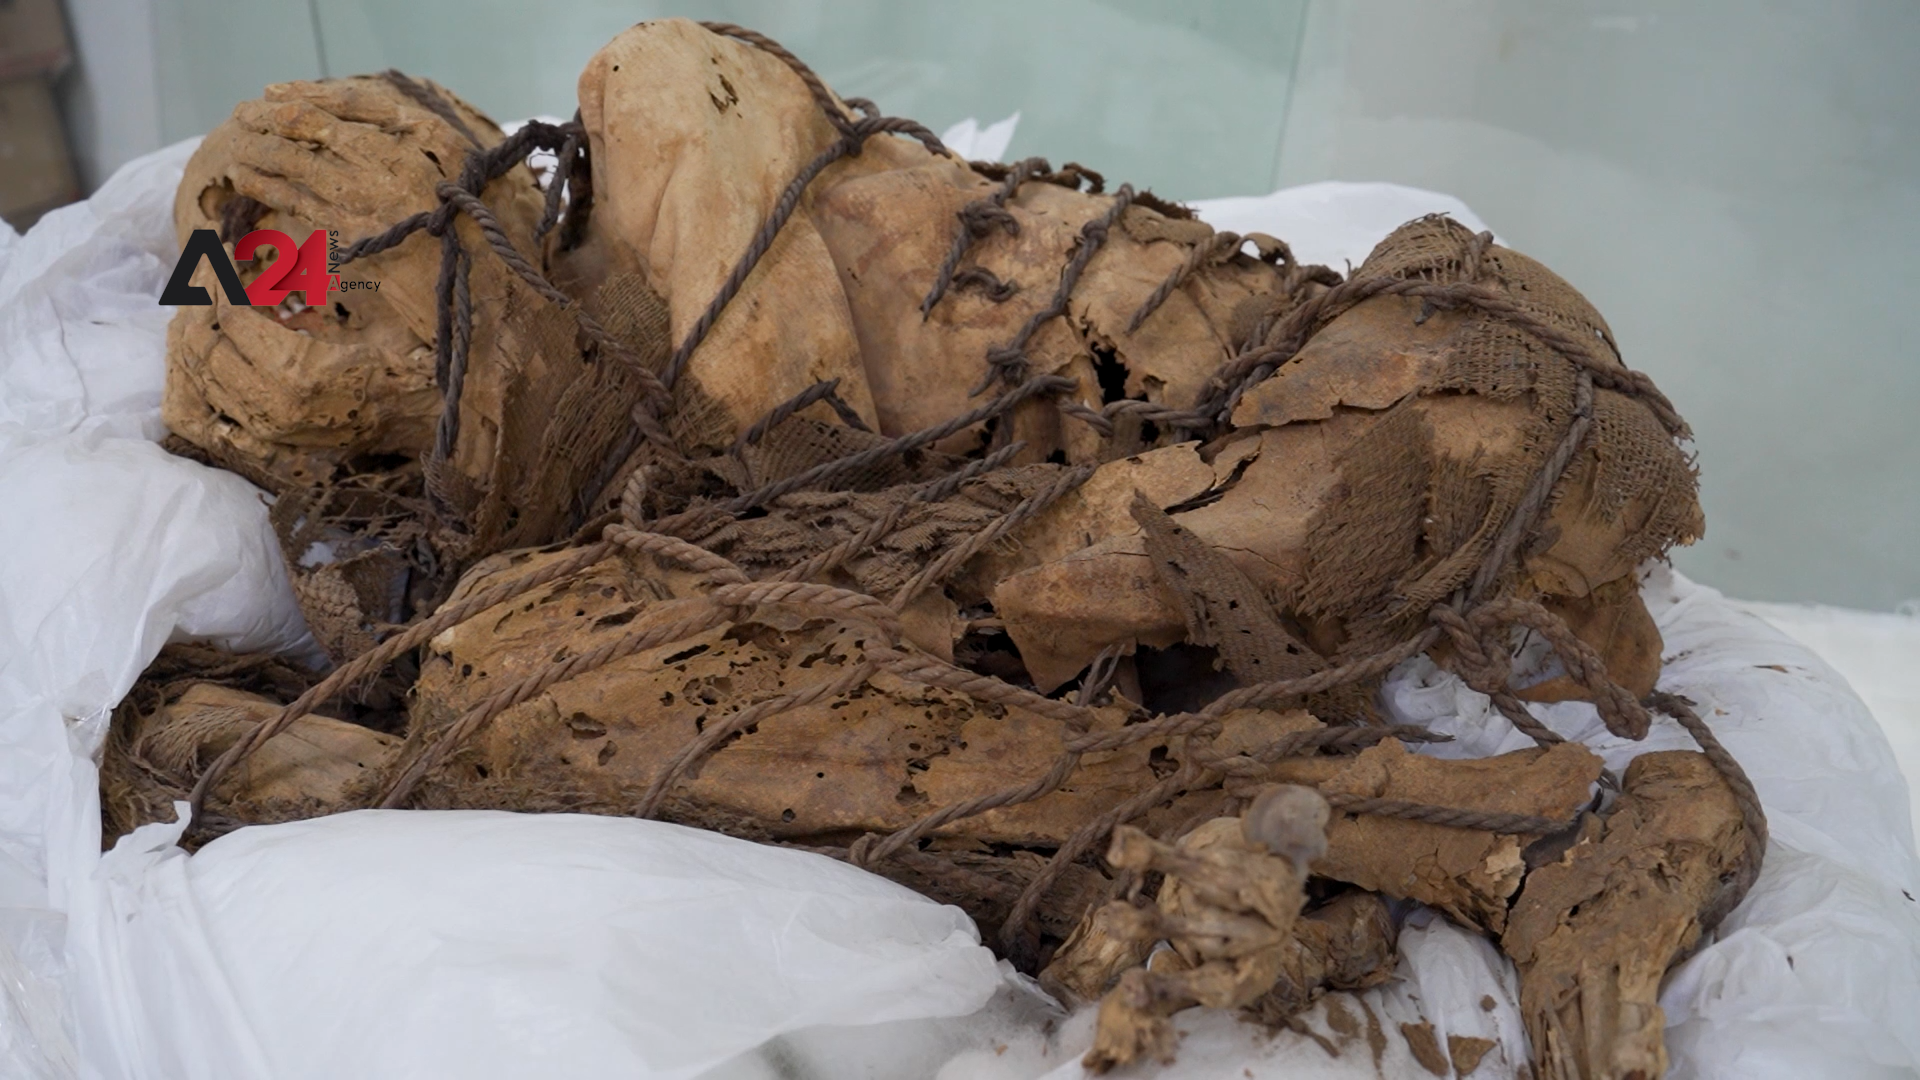 Peru- Archeologists discover 800-year-old Pre-Inca mummy in Peru